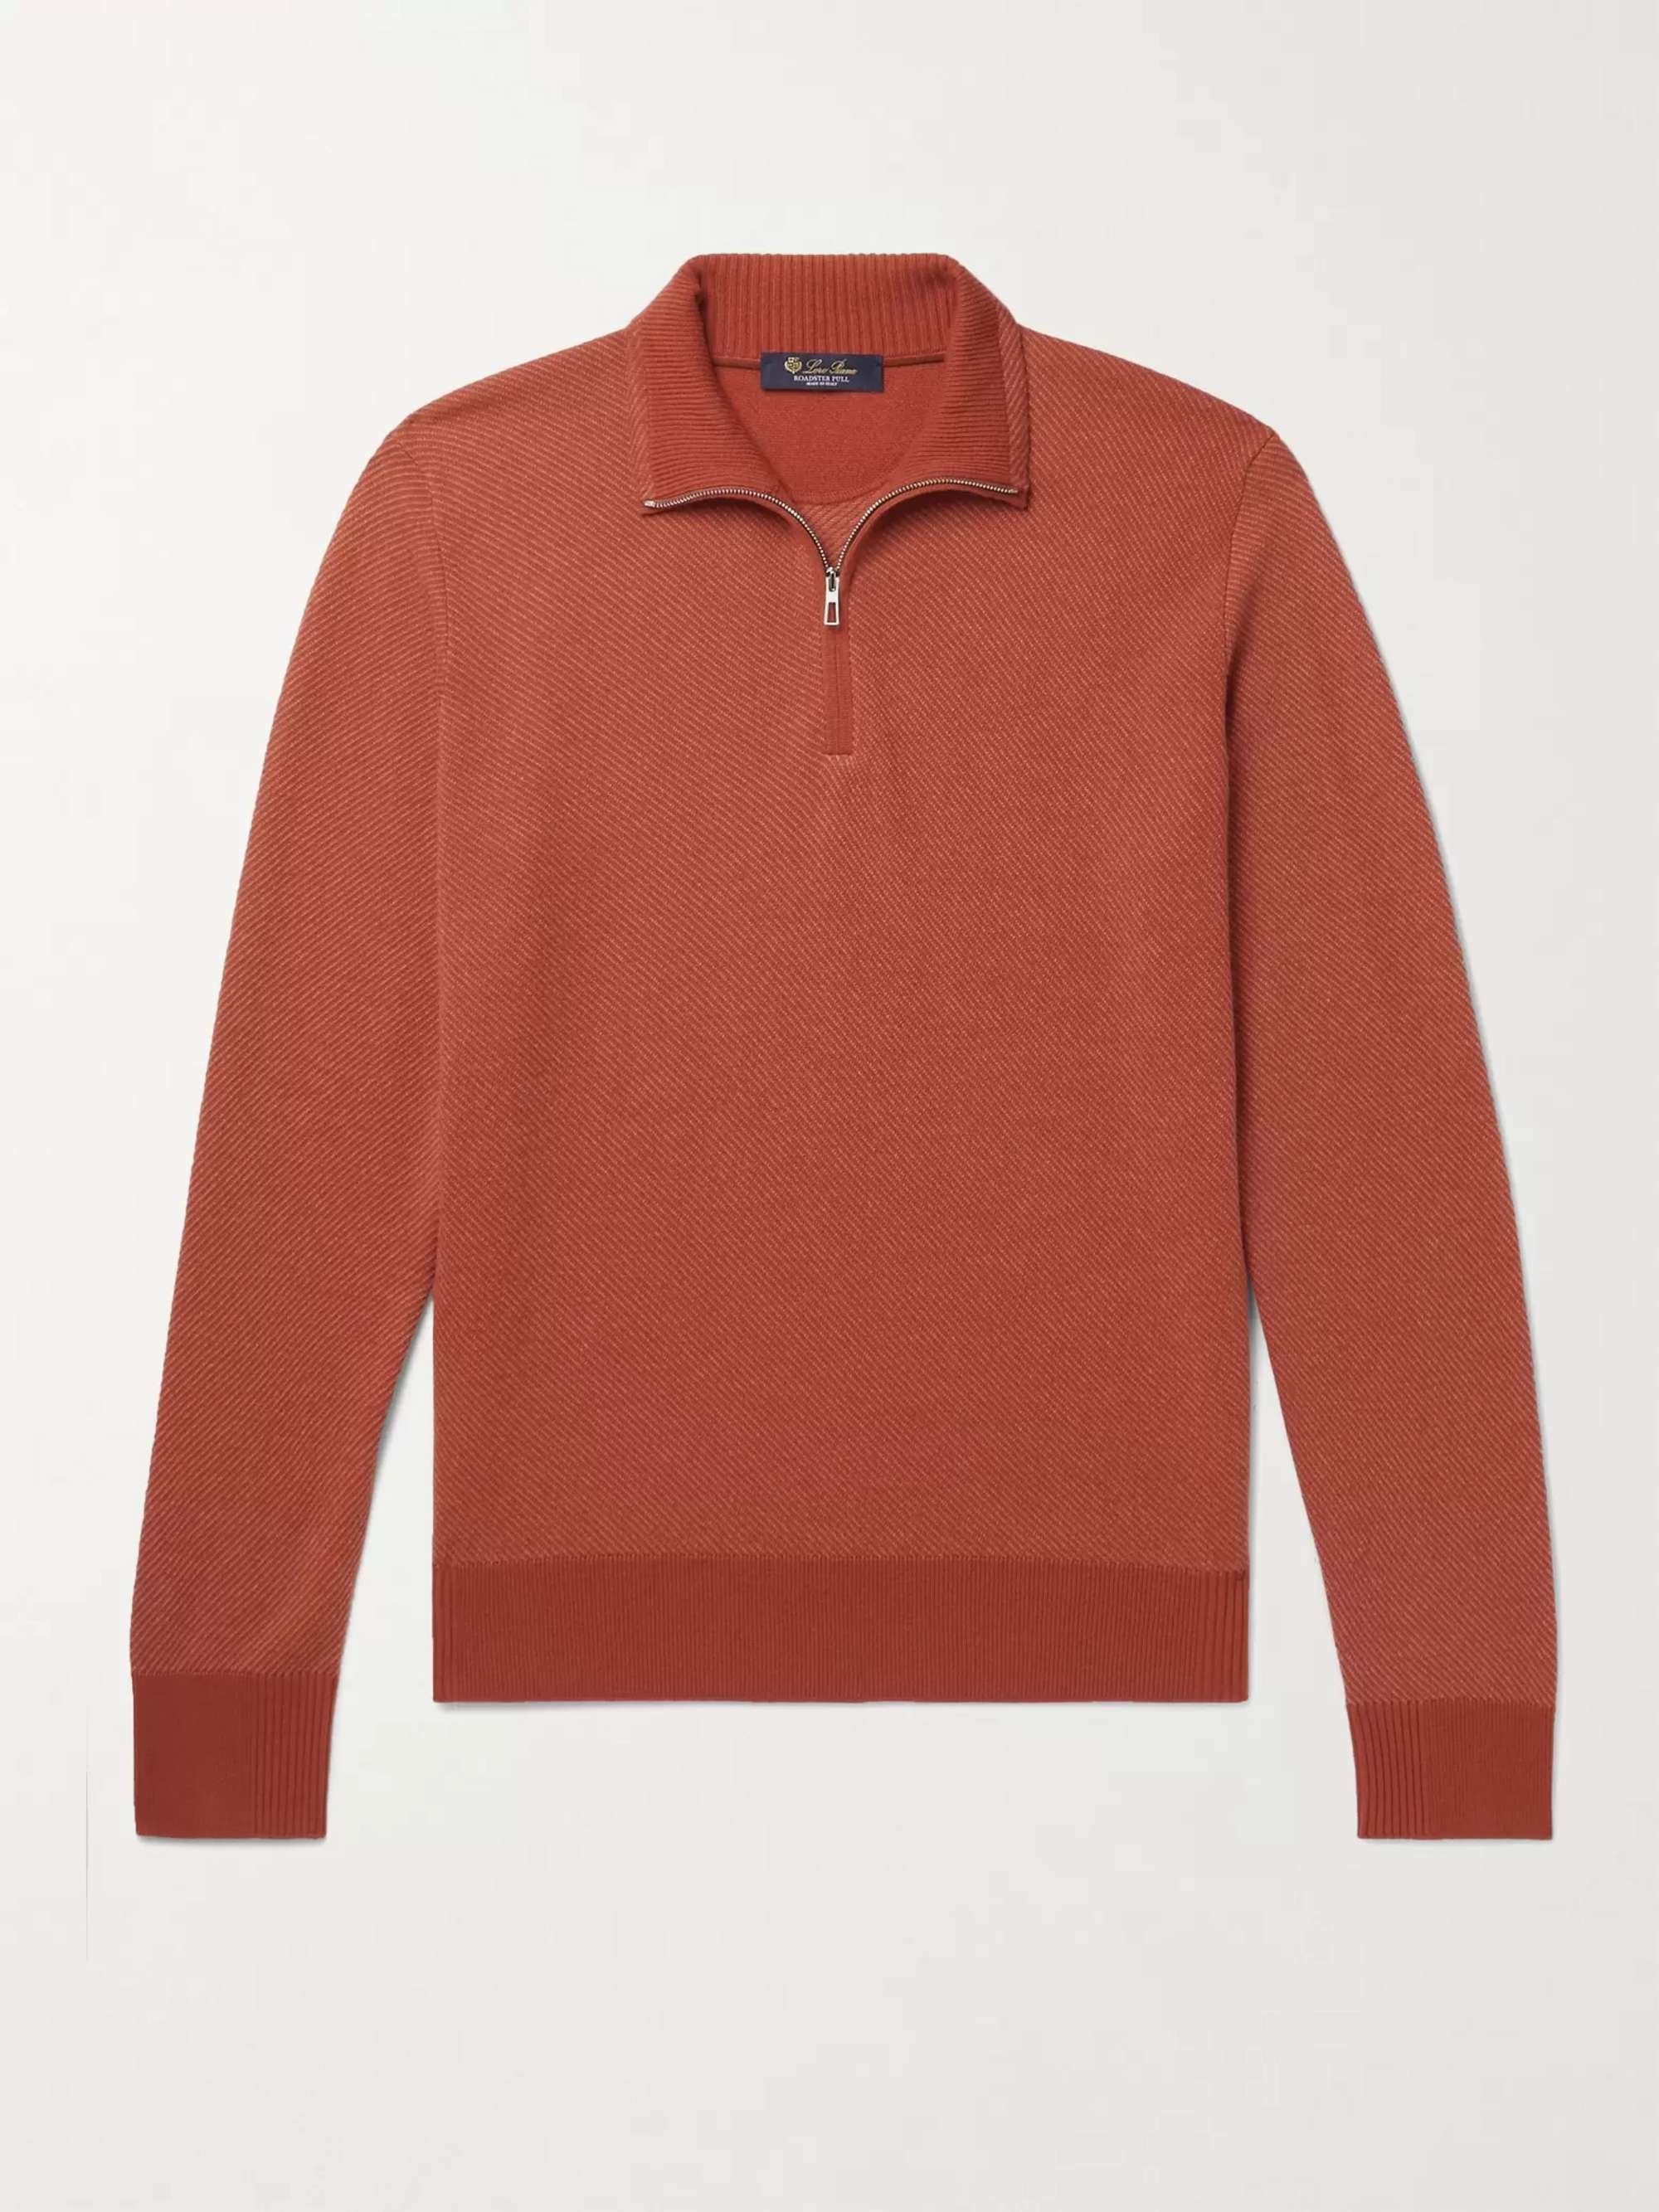 LORO PIANA Roadster Striped Cashmere Half-Zip Sweater for Men | MR PORTER